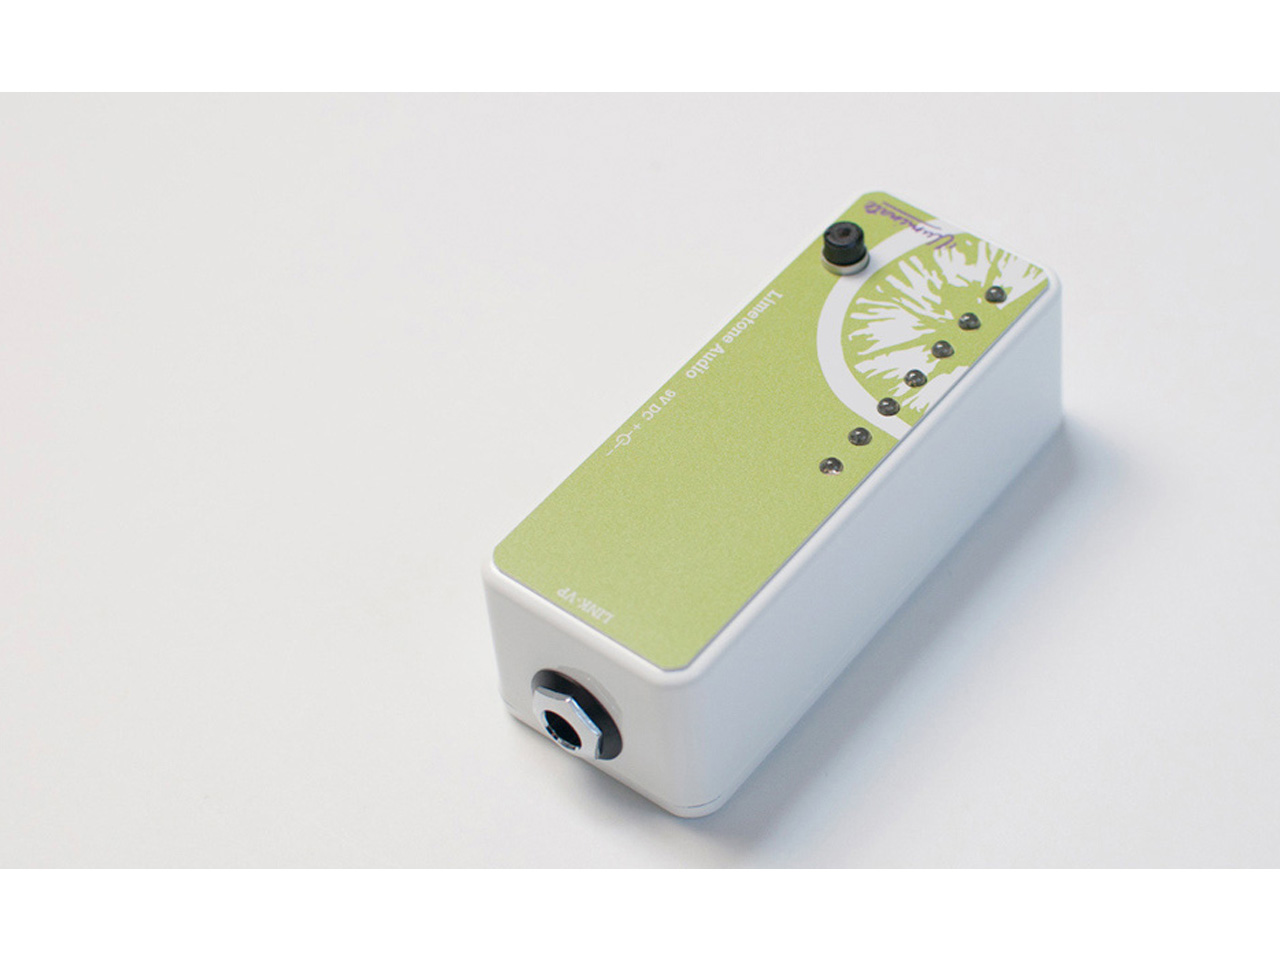 【お取寄せ商品】Limetone Audio illuminate box mini (ライムトーンオーディオ)